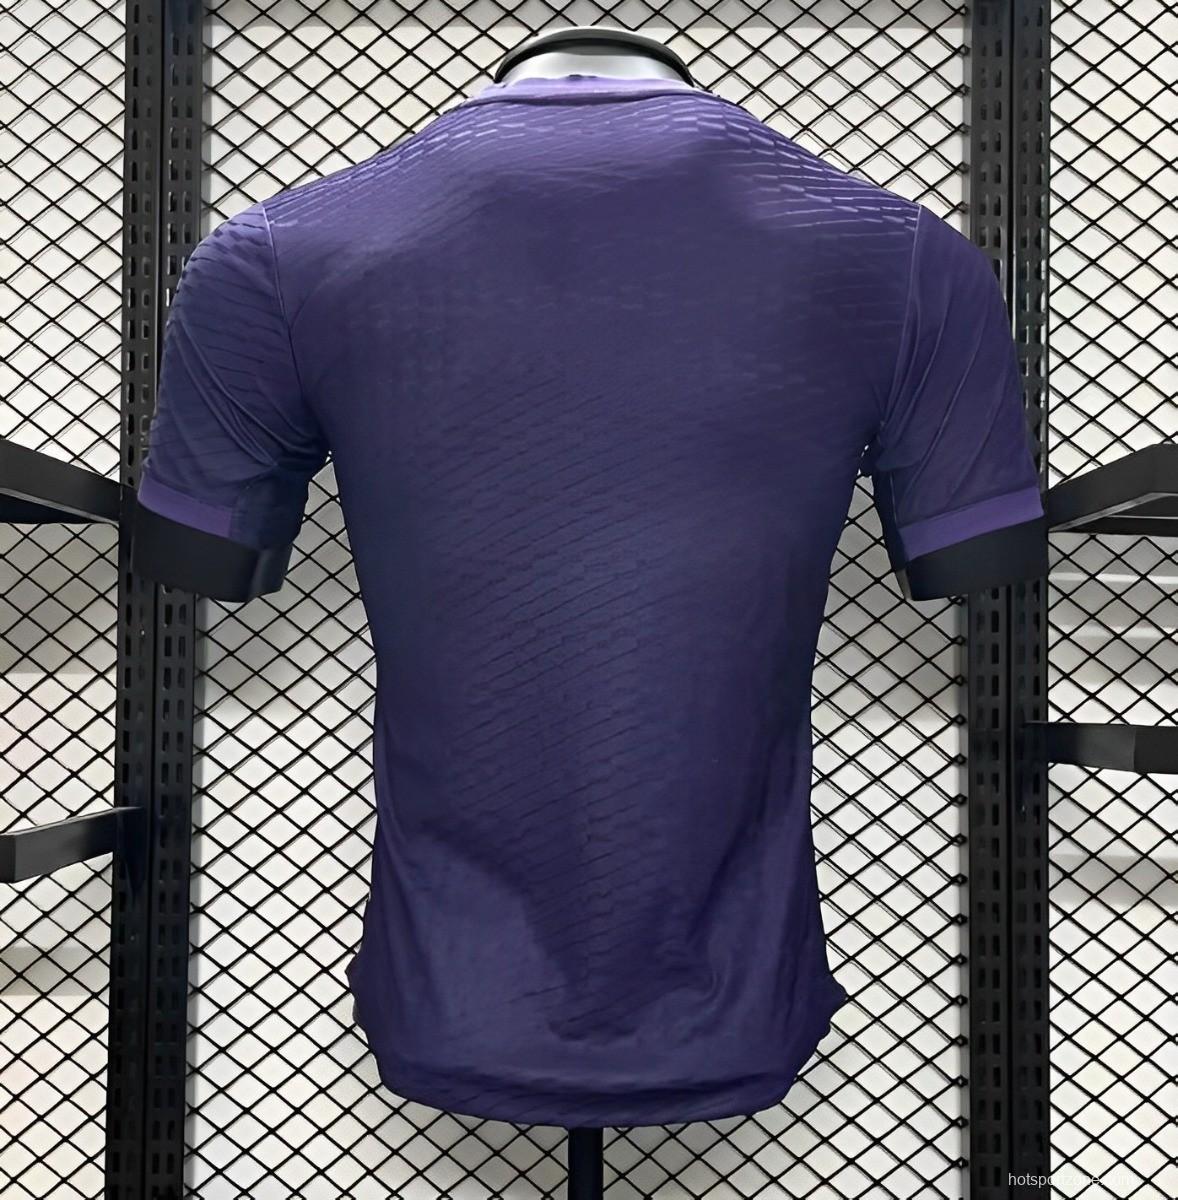 Player Version 24/25 Real Madrid x Yamamoto Purple Jersey